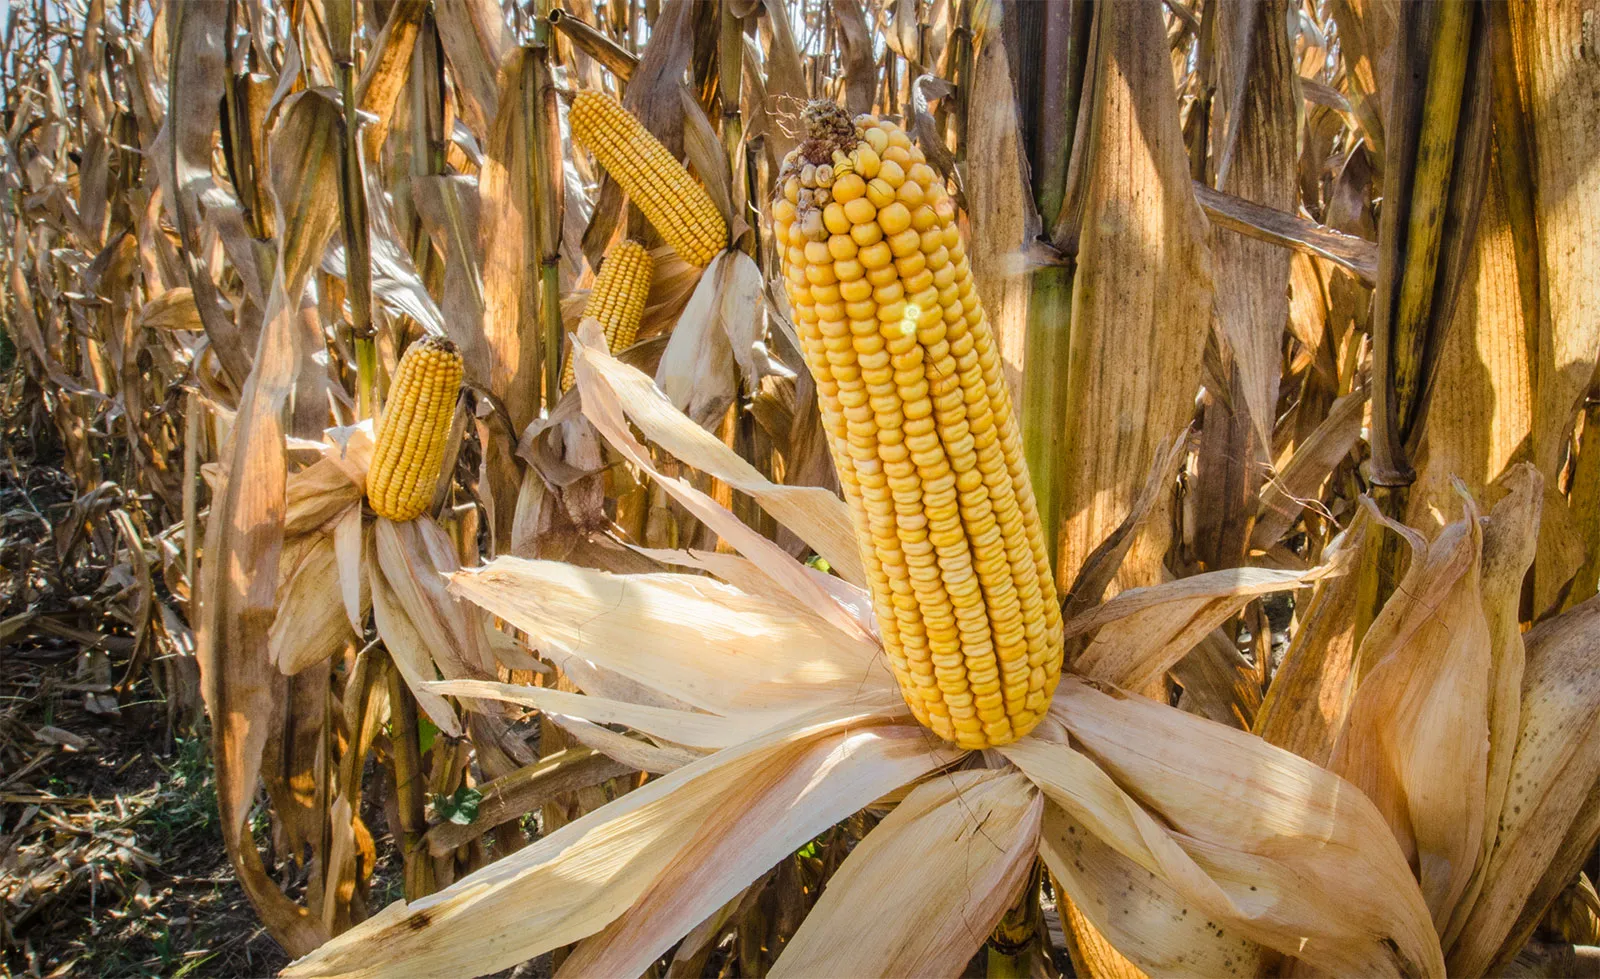 المكسيك تشتري 123 ألف طن من الذرة الأمريكية وتسليمها بالموسم المقبل